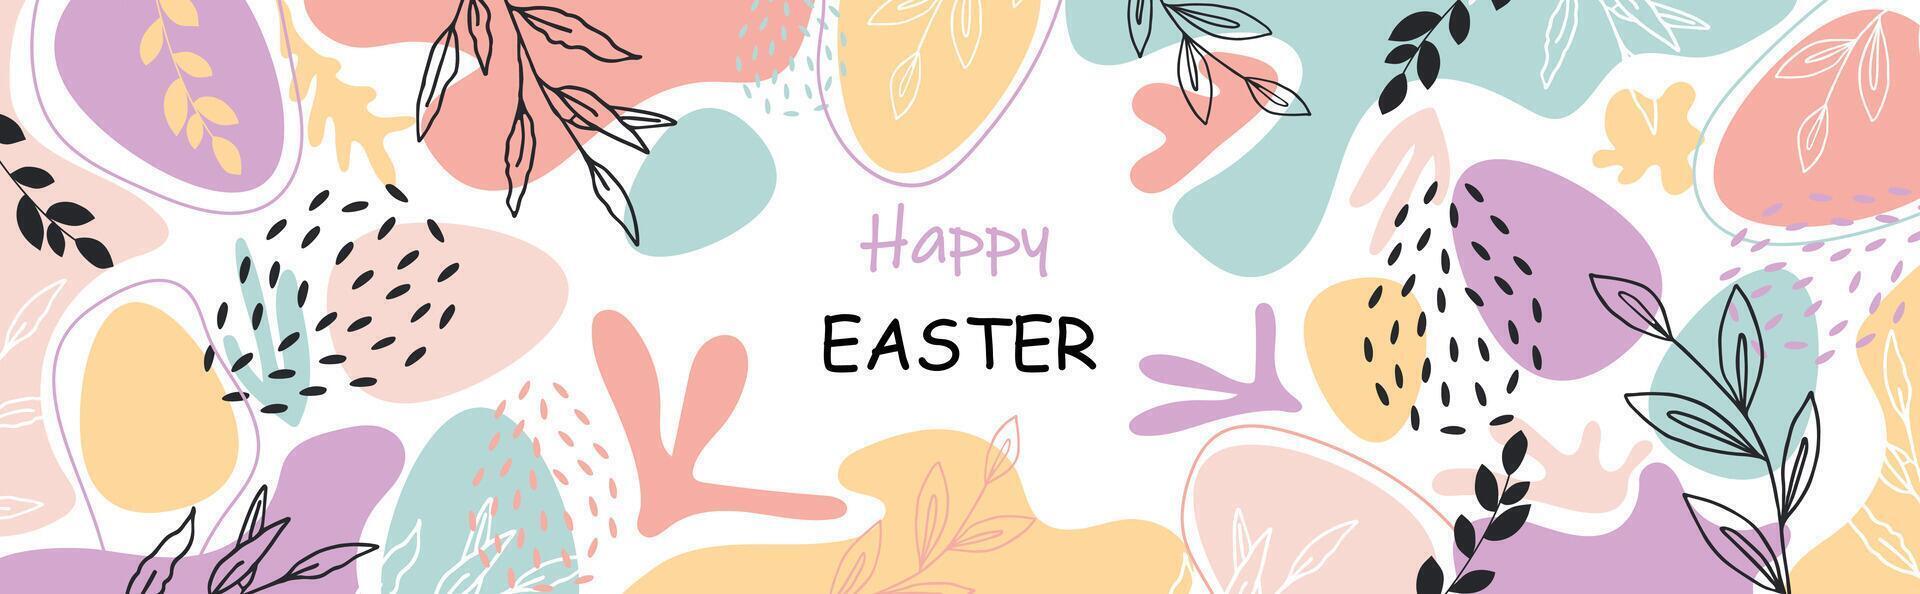 Pascua de Resurrección bandera, floral diseño con letras y huevos. Pascua de Resurrección tarjeta. vector